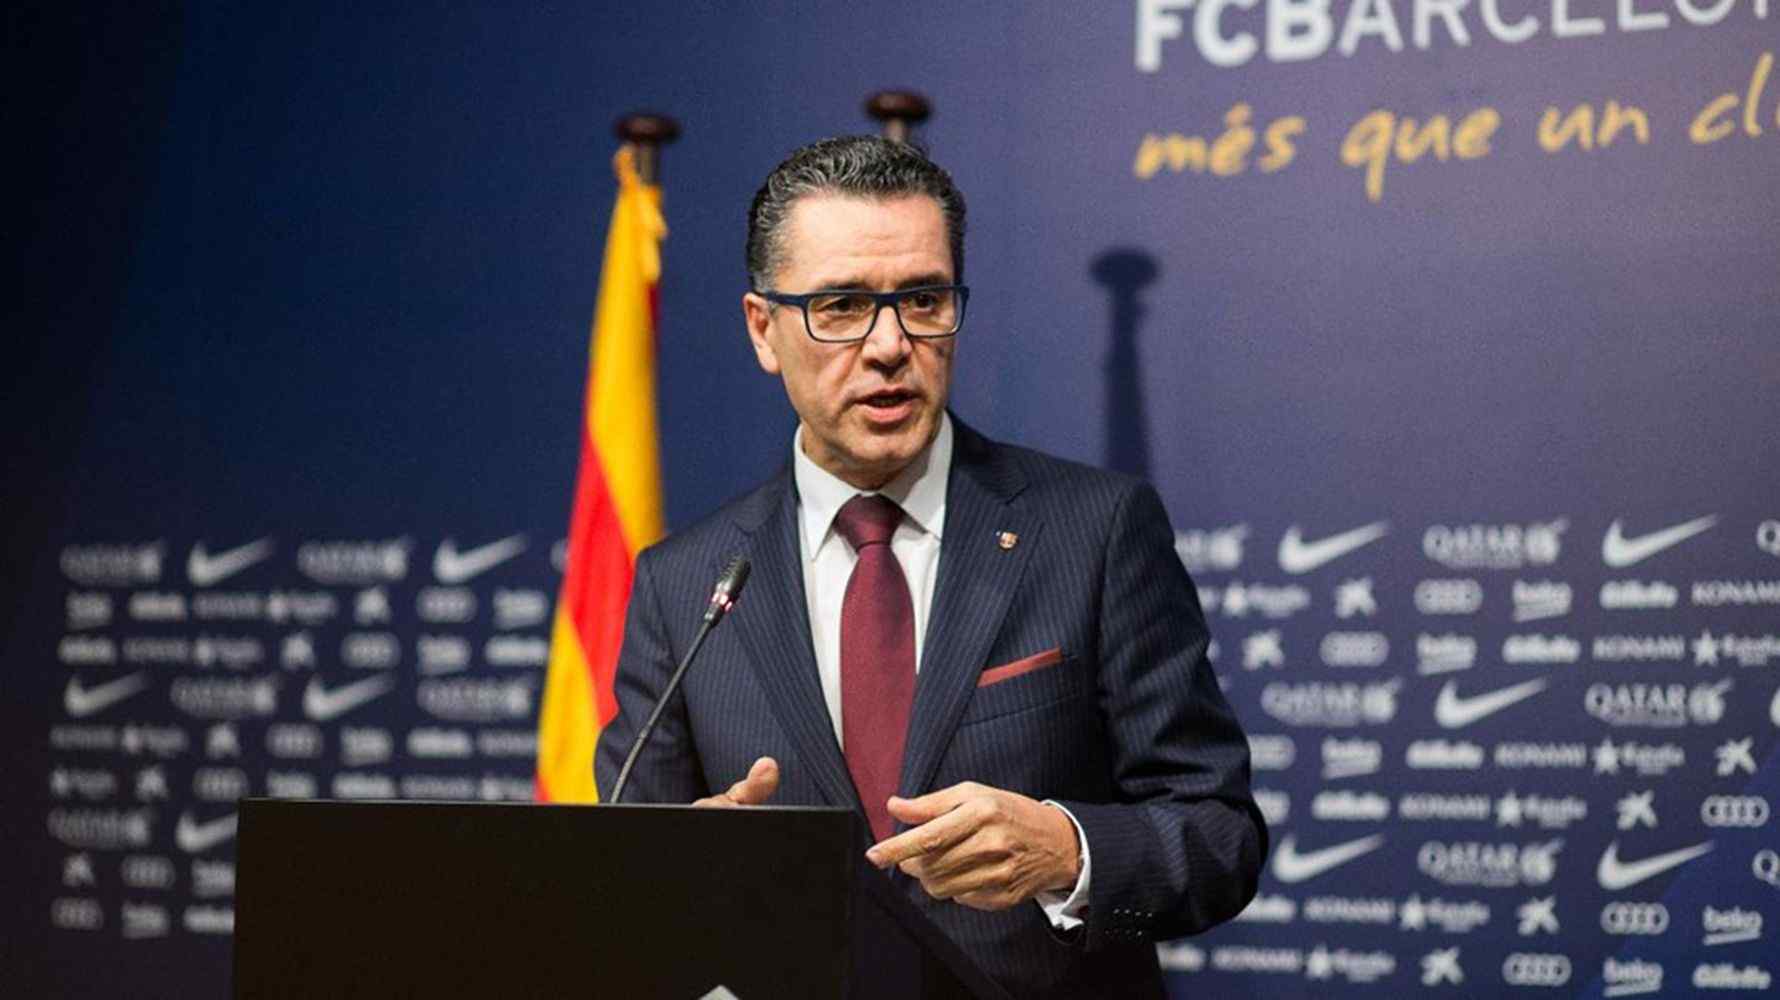 El Barça afirma que podria arribar al Tribunal Suprem en l'acció de responsabilitat